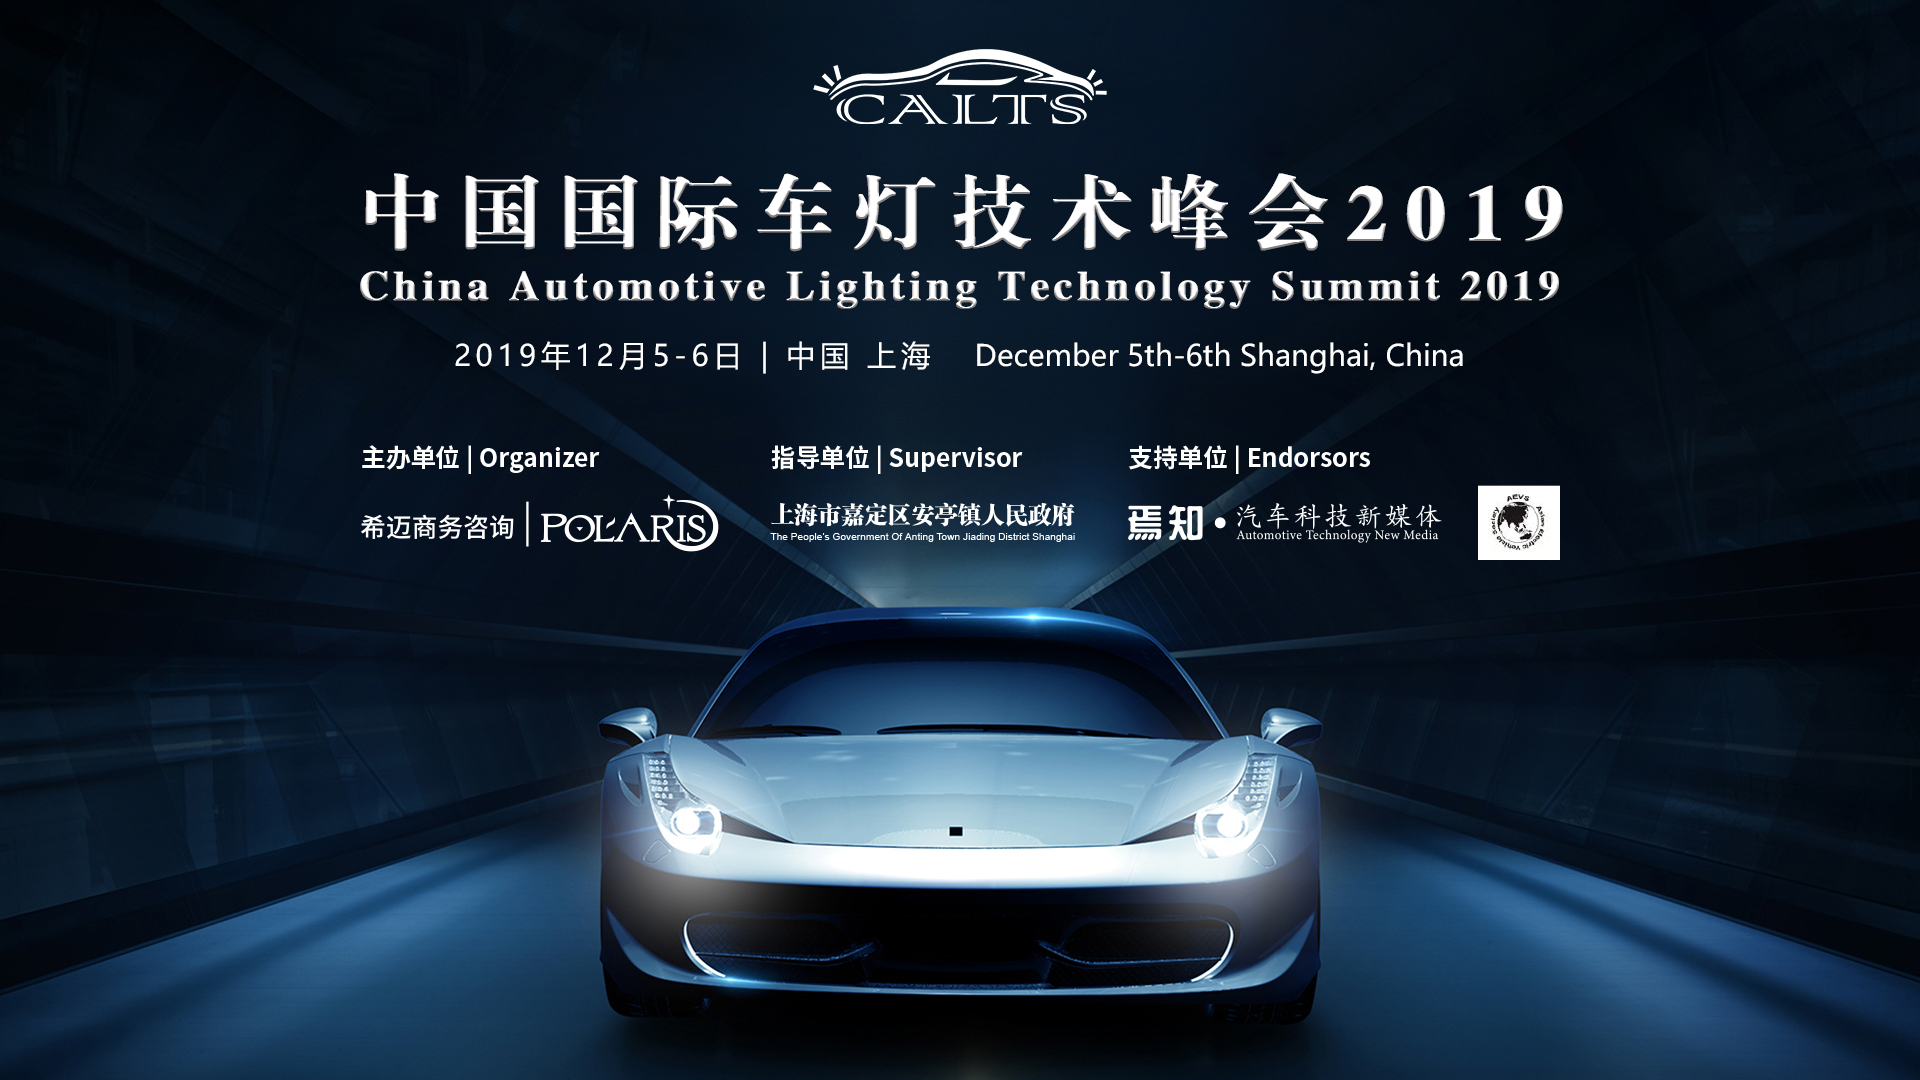 China Automotive Lighting Technology Summit